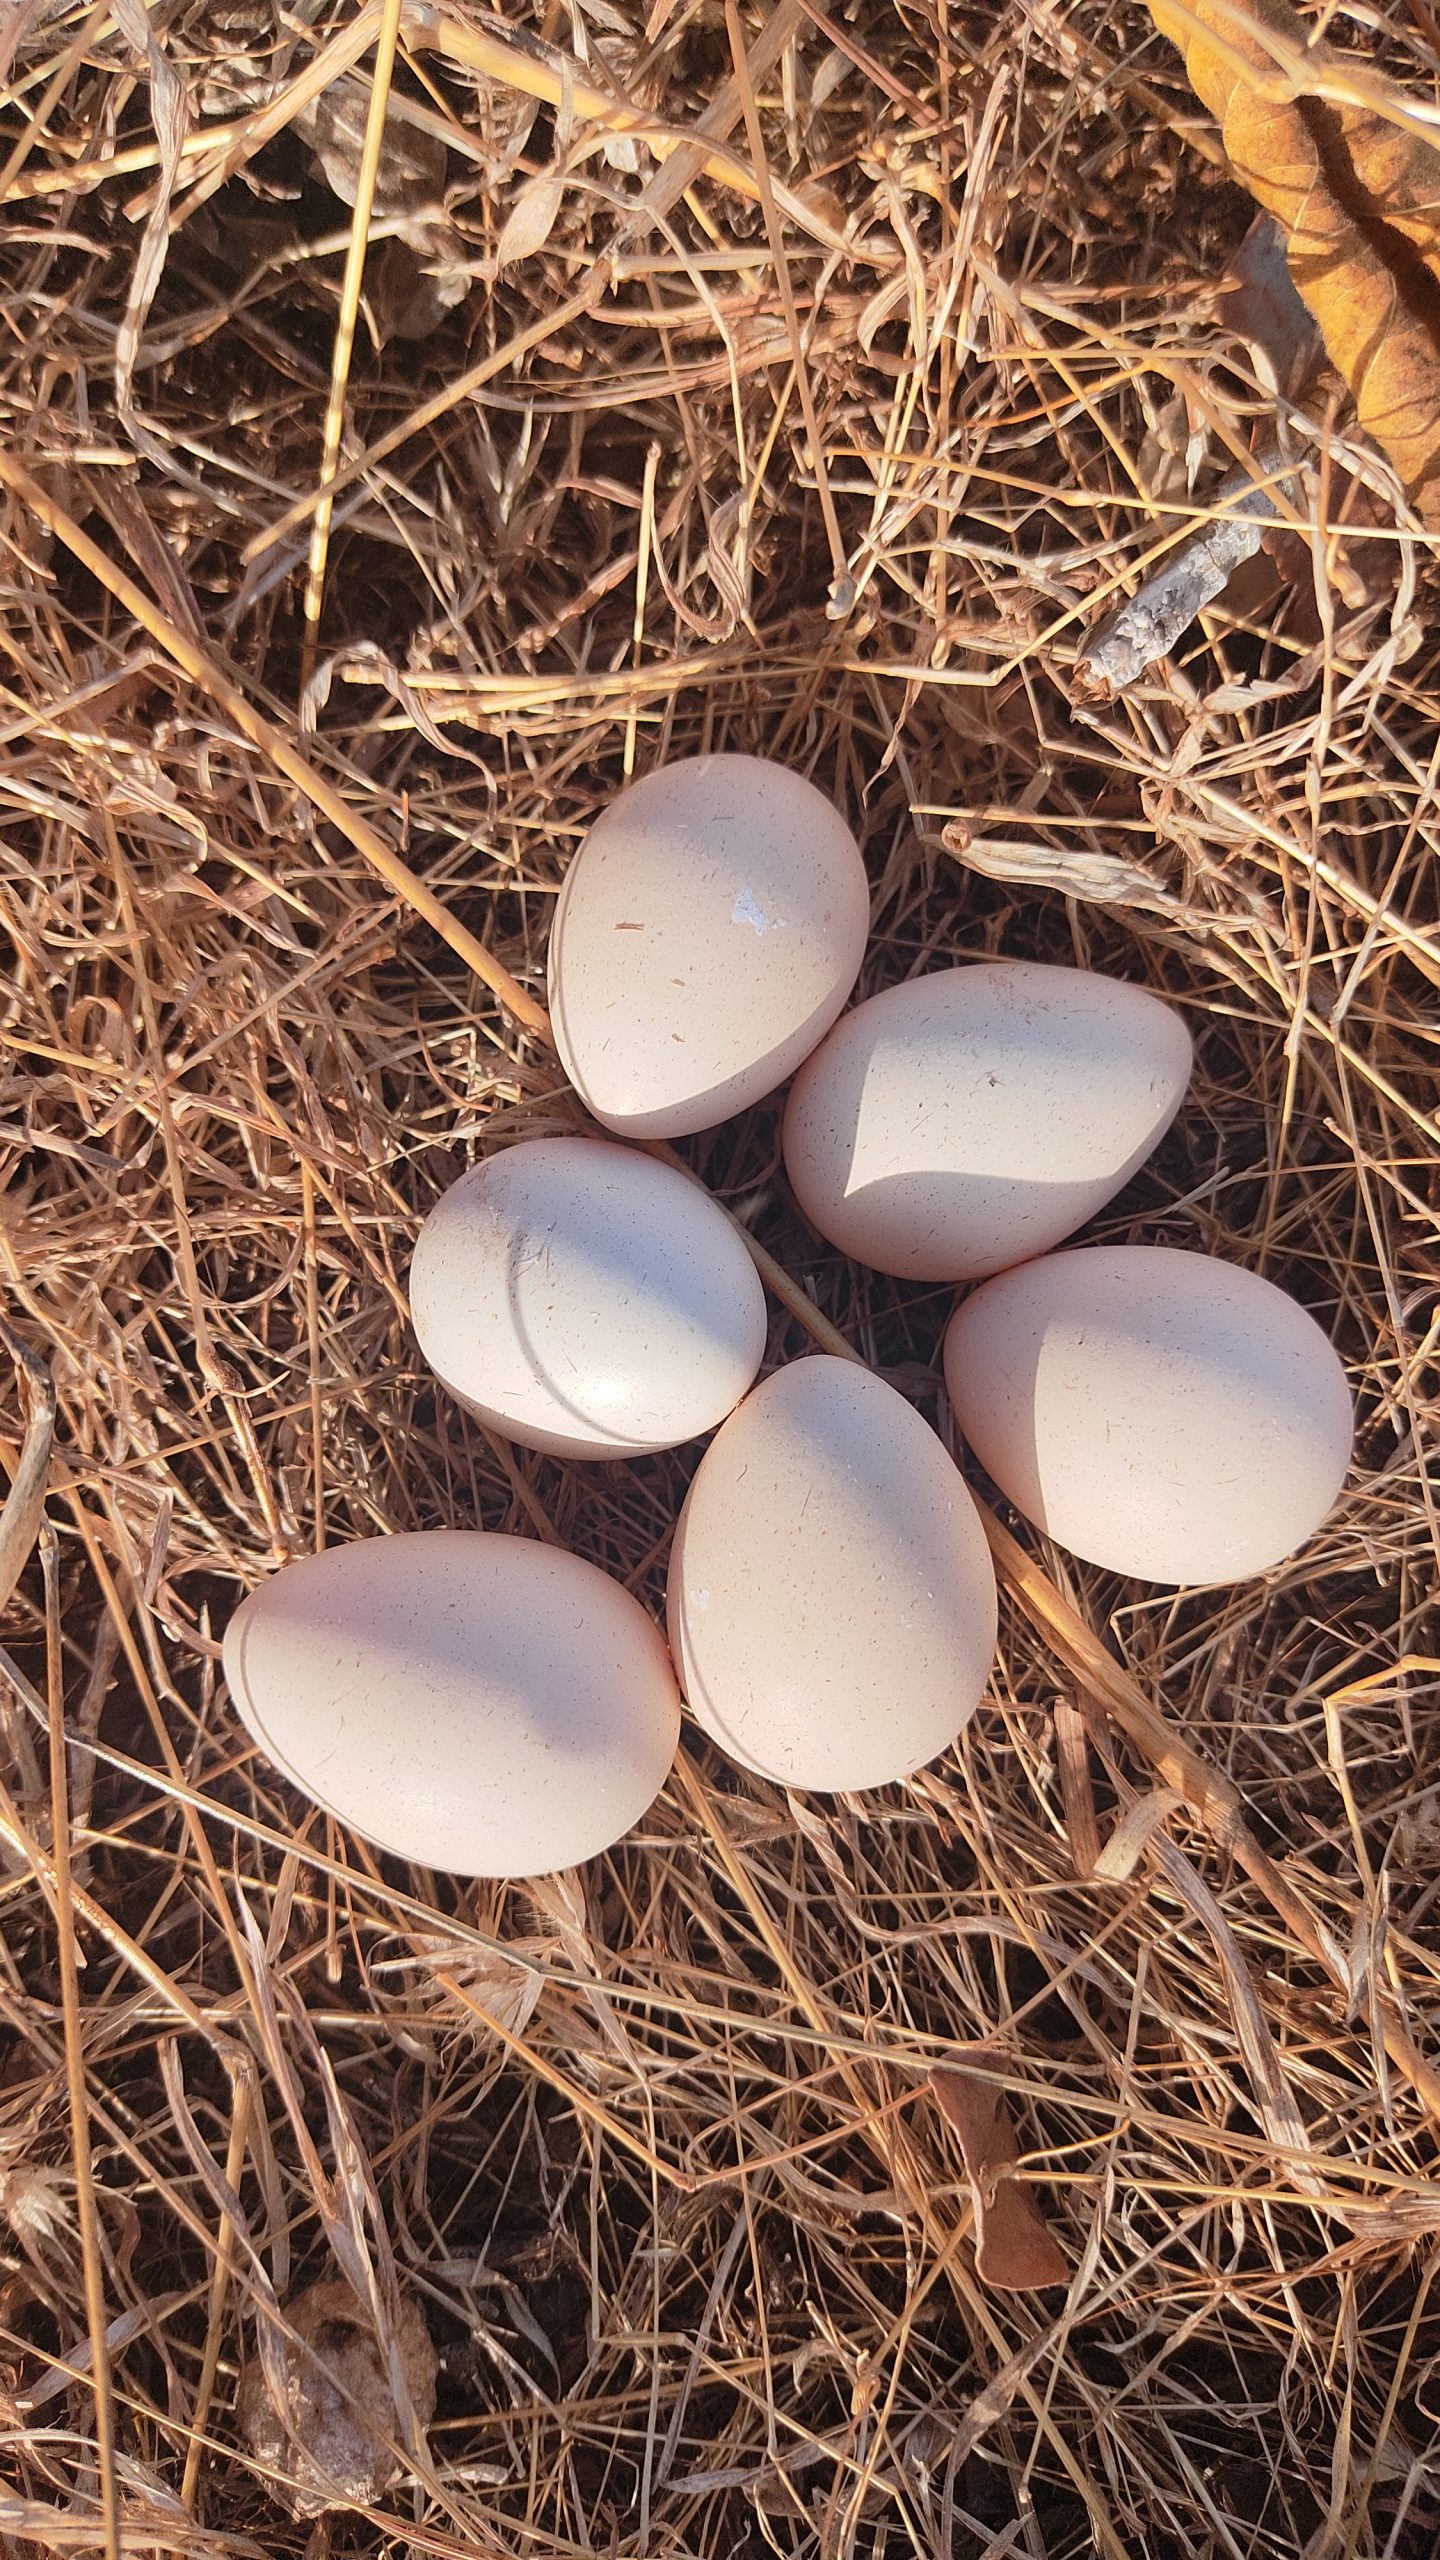 A bird's eggs